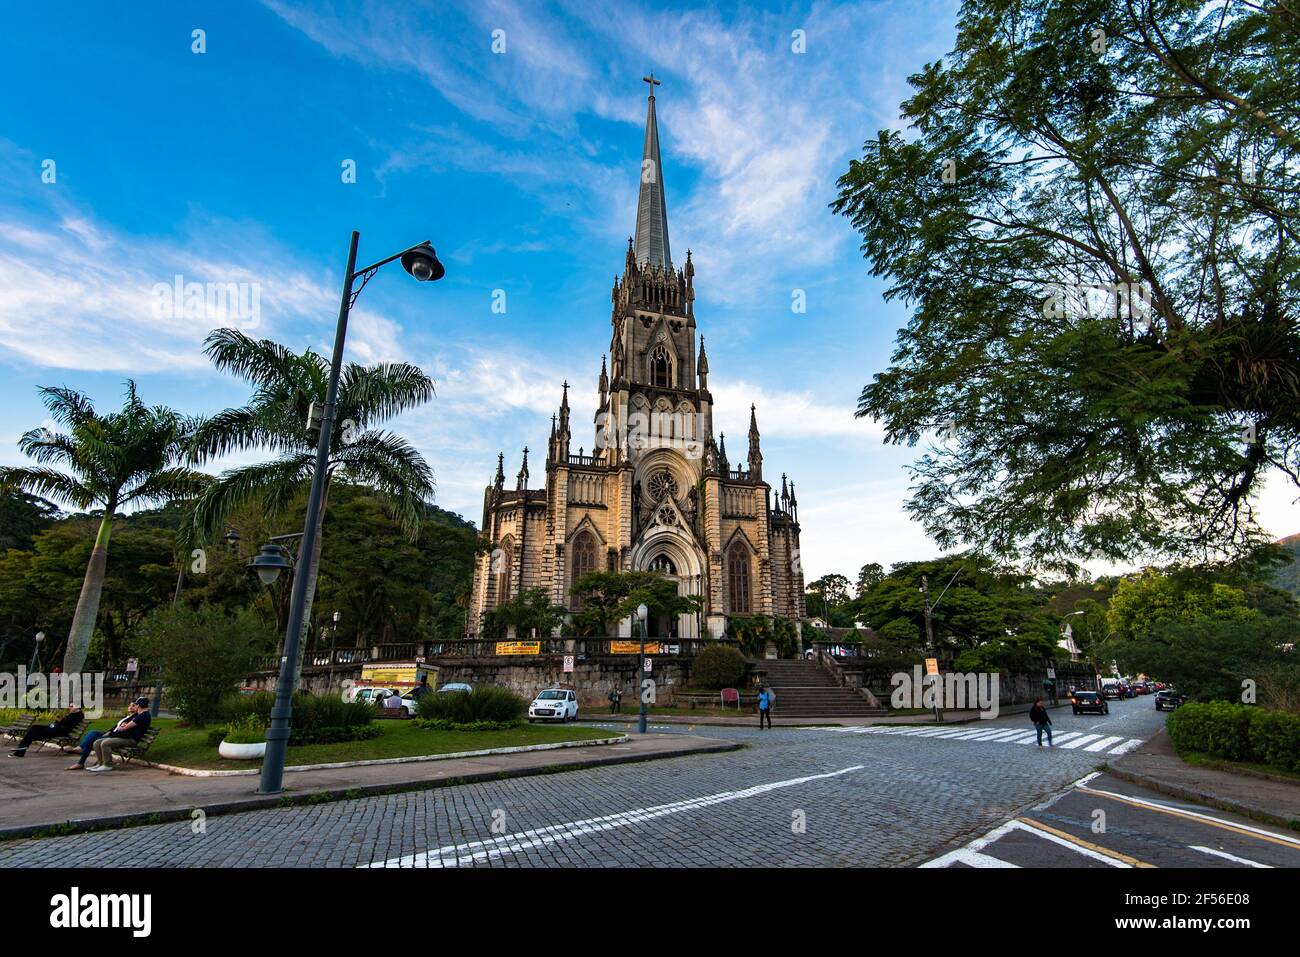 Petropolis, Brasile - 25 maggio 2017: La Cattedrale di São Pedro de Alcântara è una delle numerose attrazioni turistiche di Petropolis, città in montagna. Foto Stock